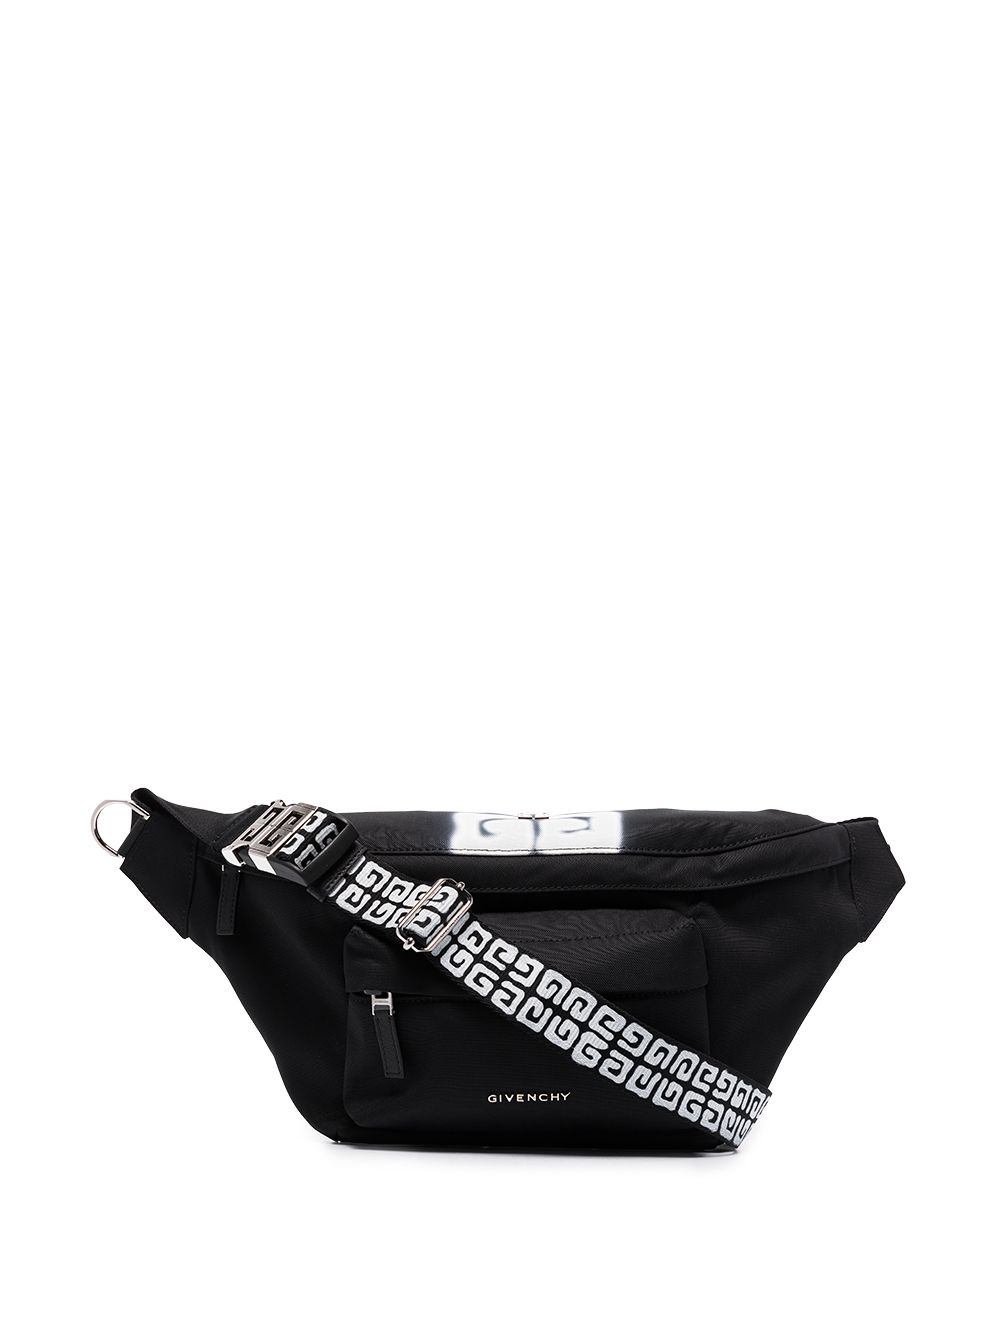 фото Givenchy поясная сумка с логотипом 4g из коллаборации с chito